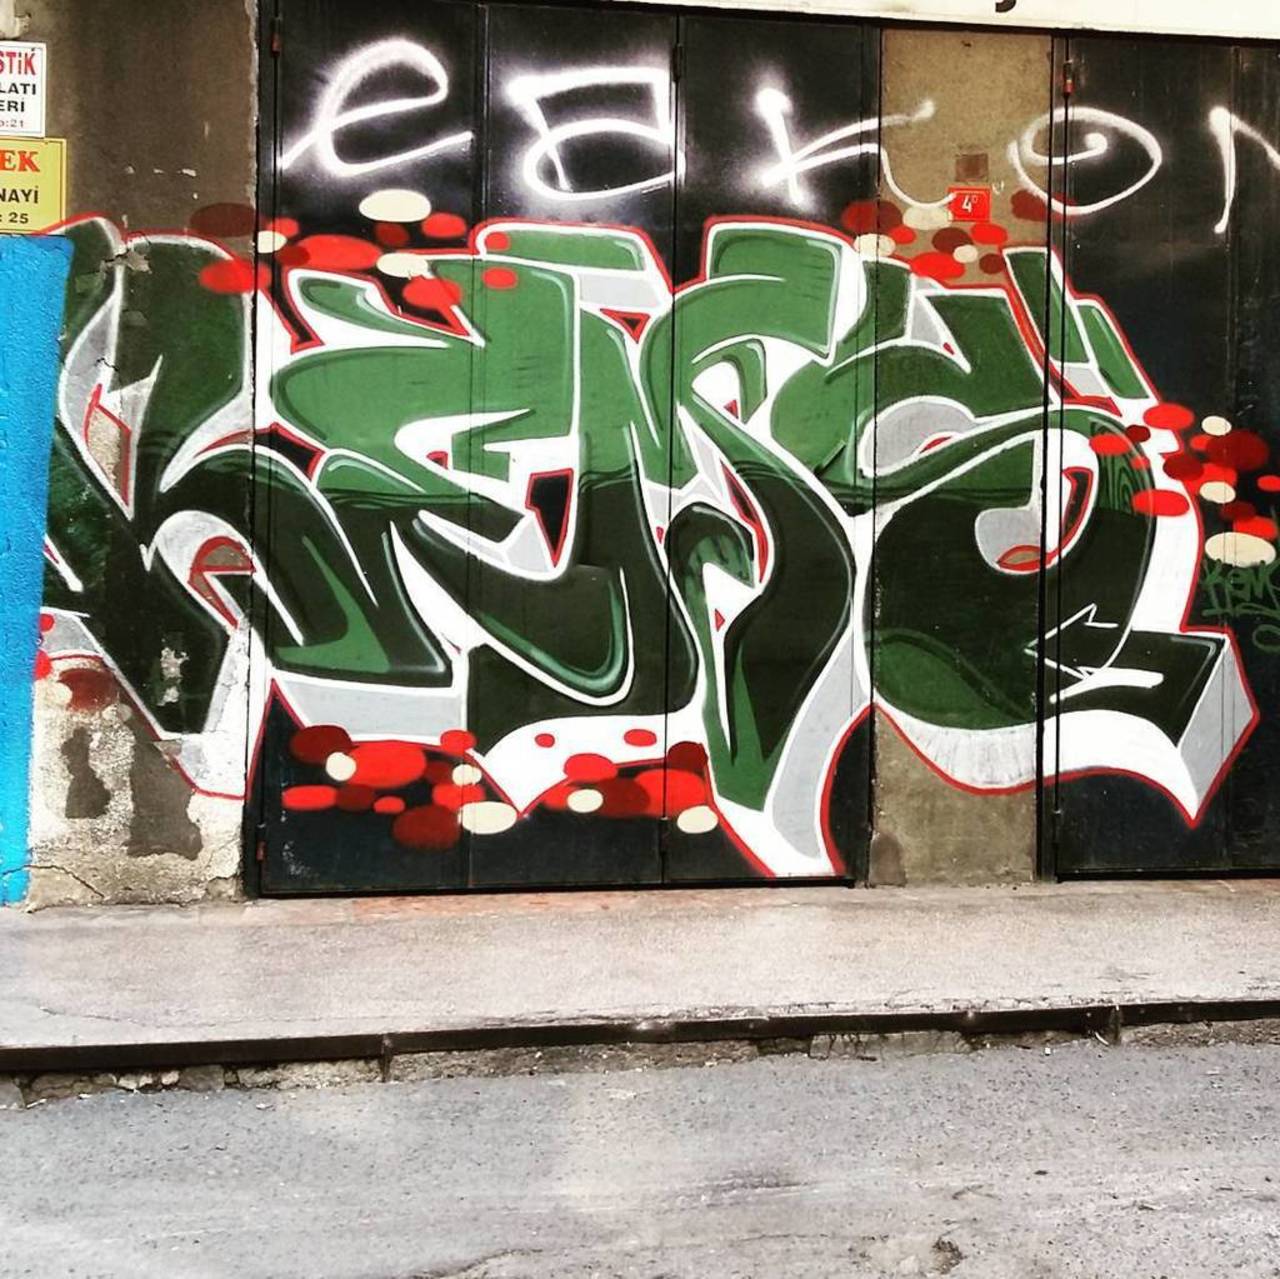 RT @StArtEverywhere: @dsb_graff #dsb_graff @rsa_graffiti @streetawesome #streetart #urbanart #graffitiart #graffiti #streetartistry  #in… https://t.co/pJrADkwg3Y